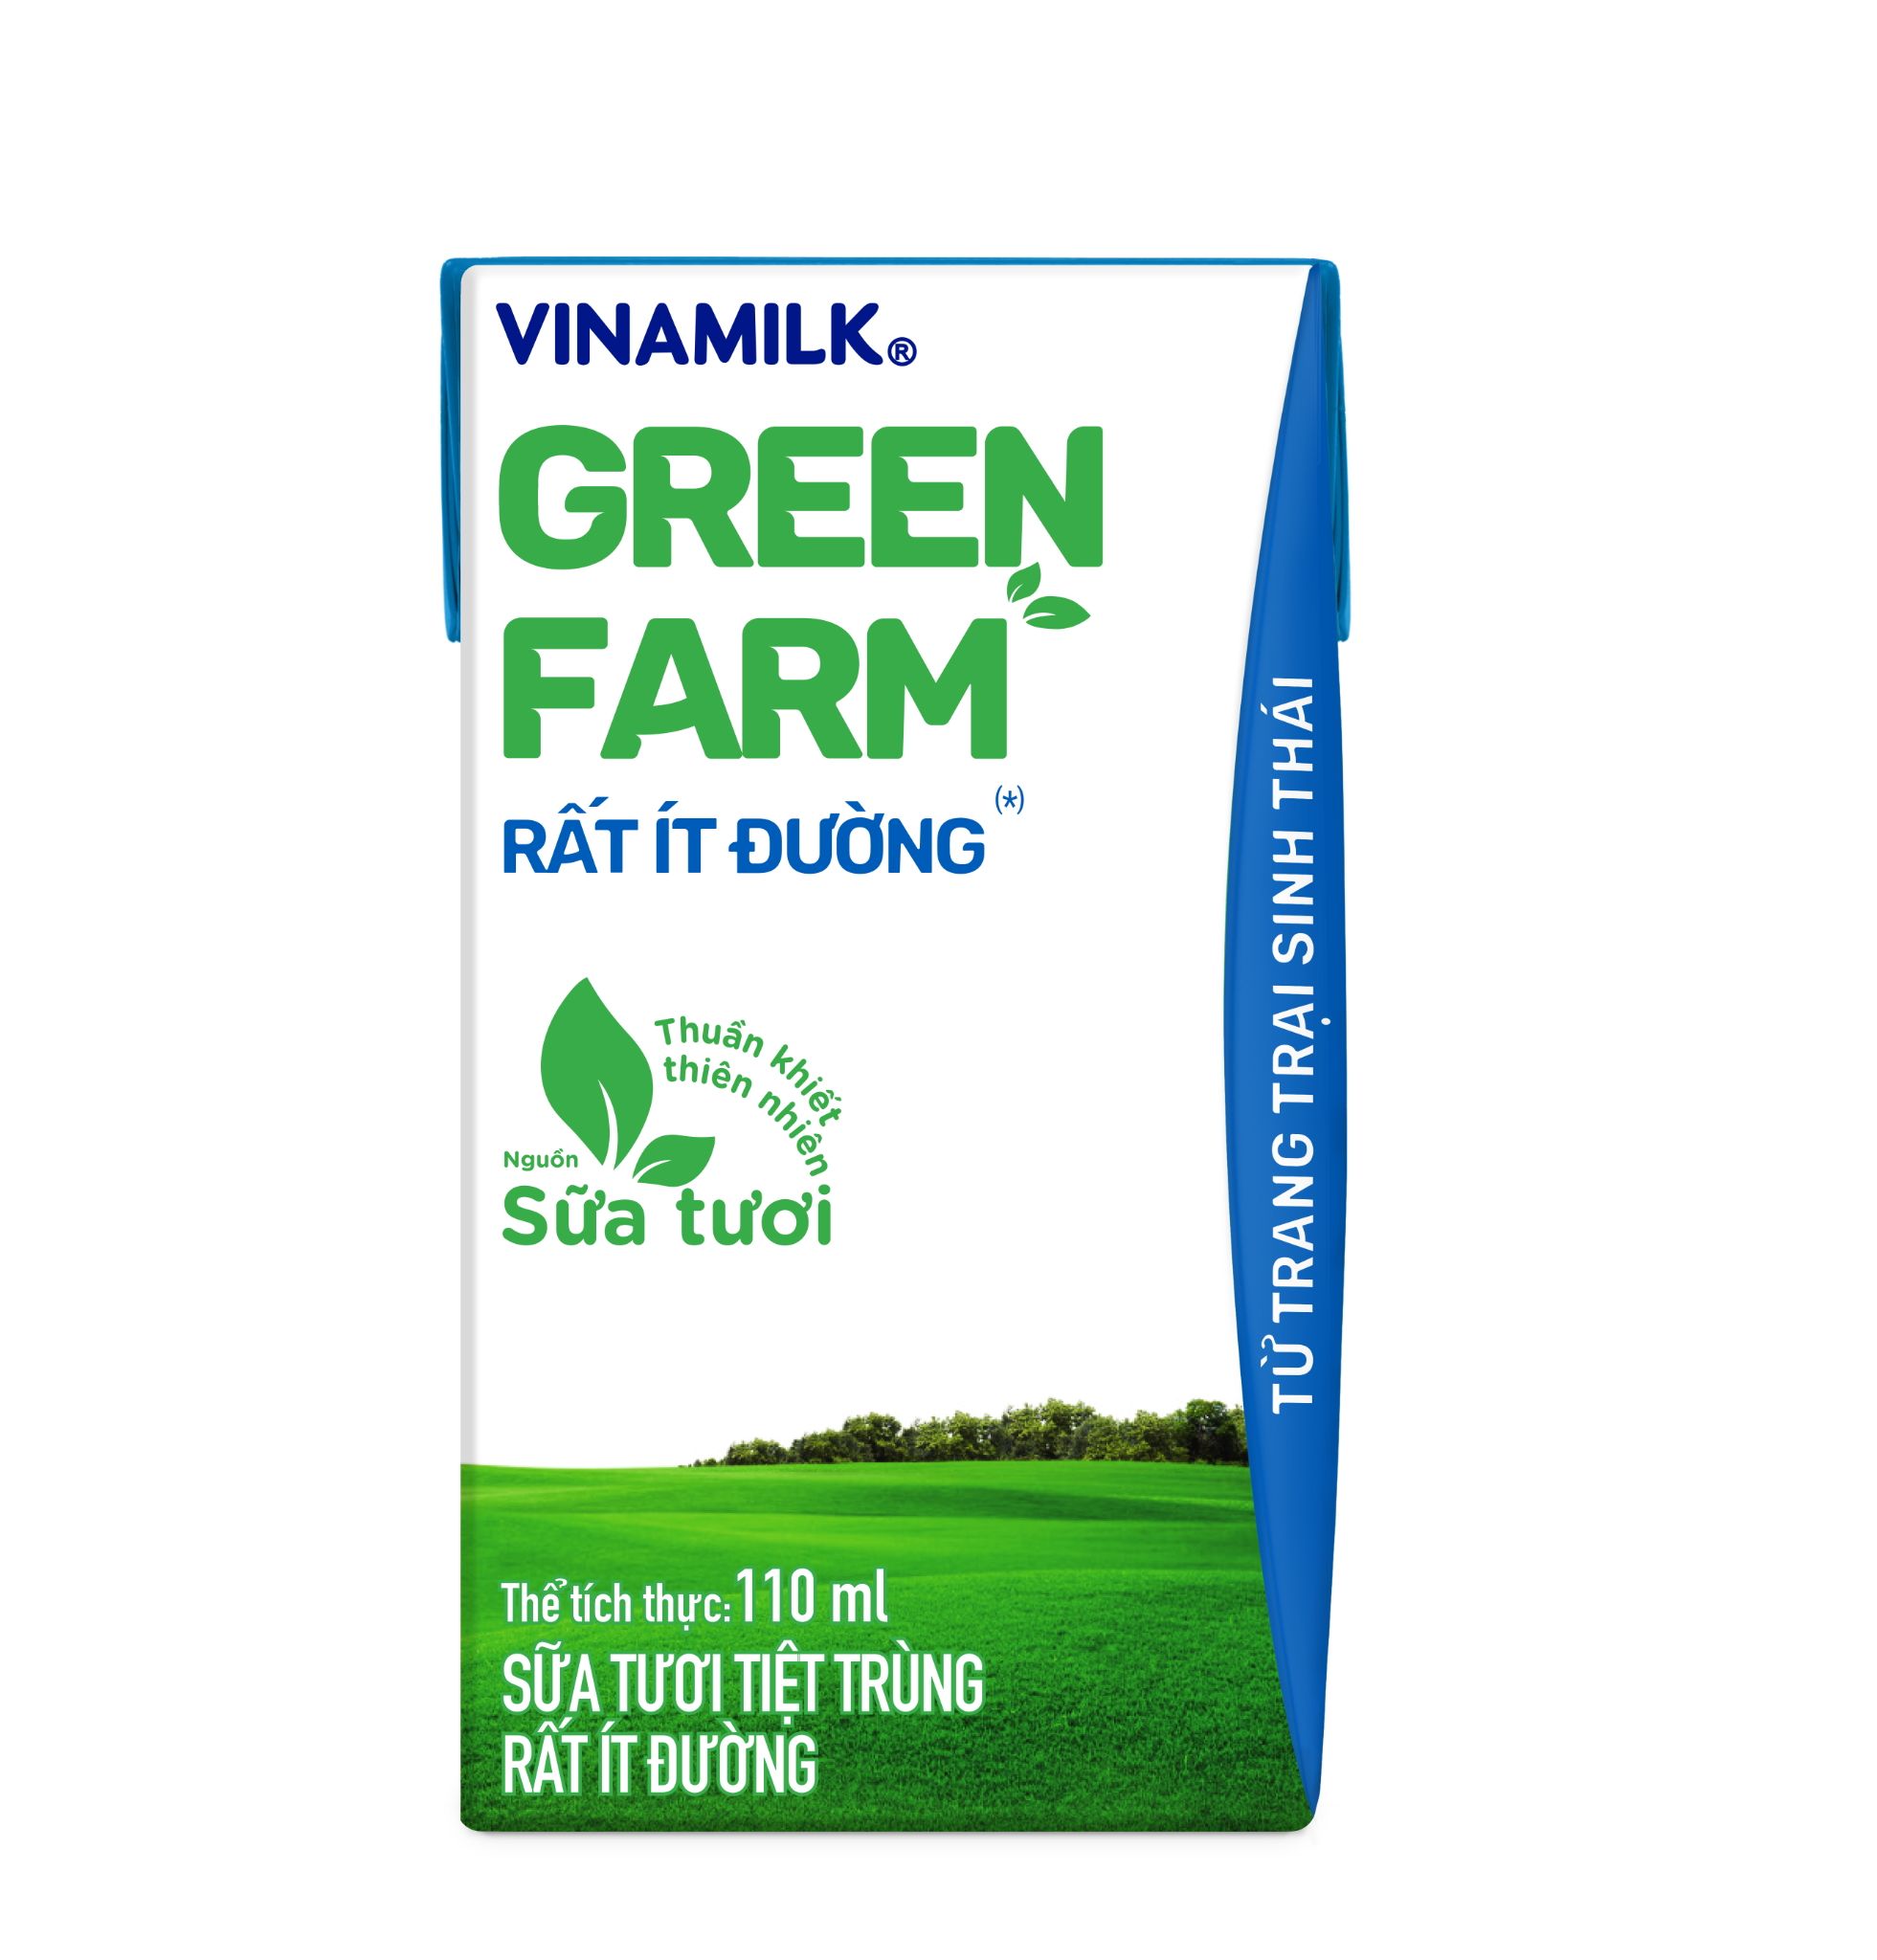 Sữa Tươi Tiệt Trùng Vinamilk Green Farm Rất ít đường - Lốc 4 hộp 110ml